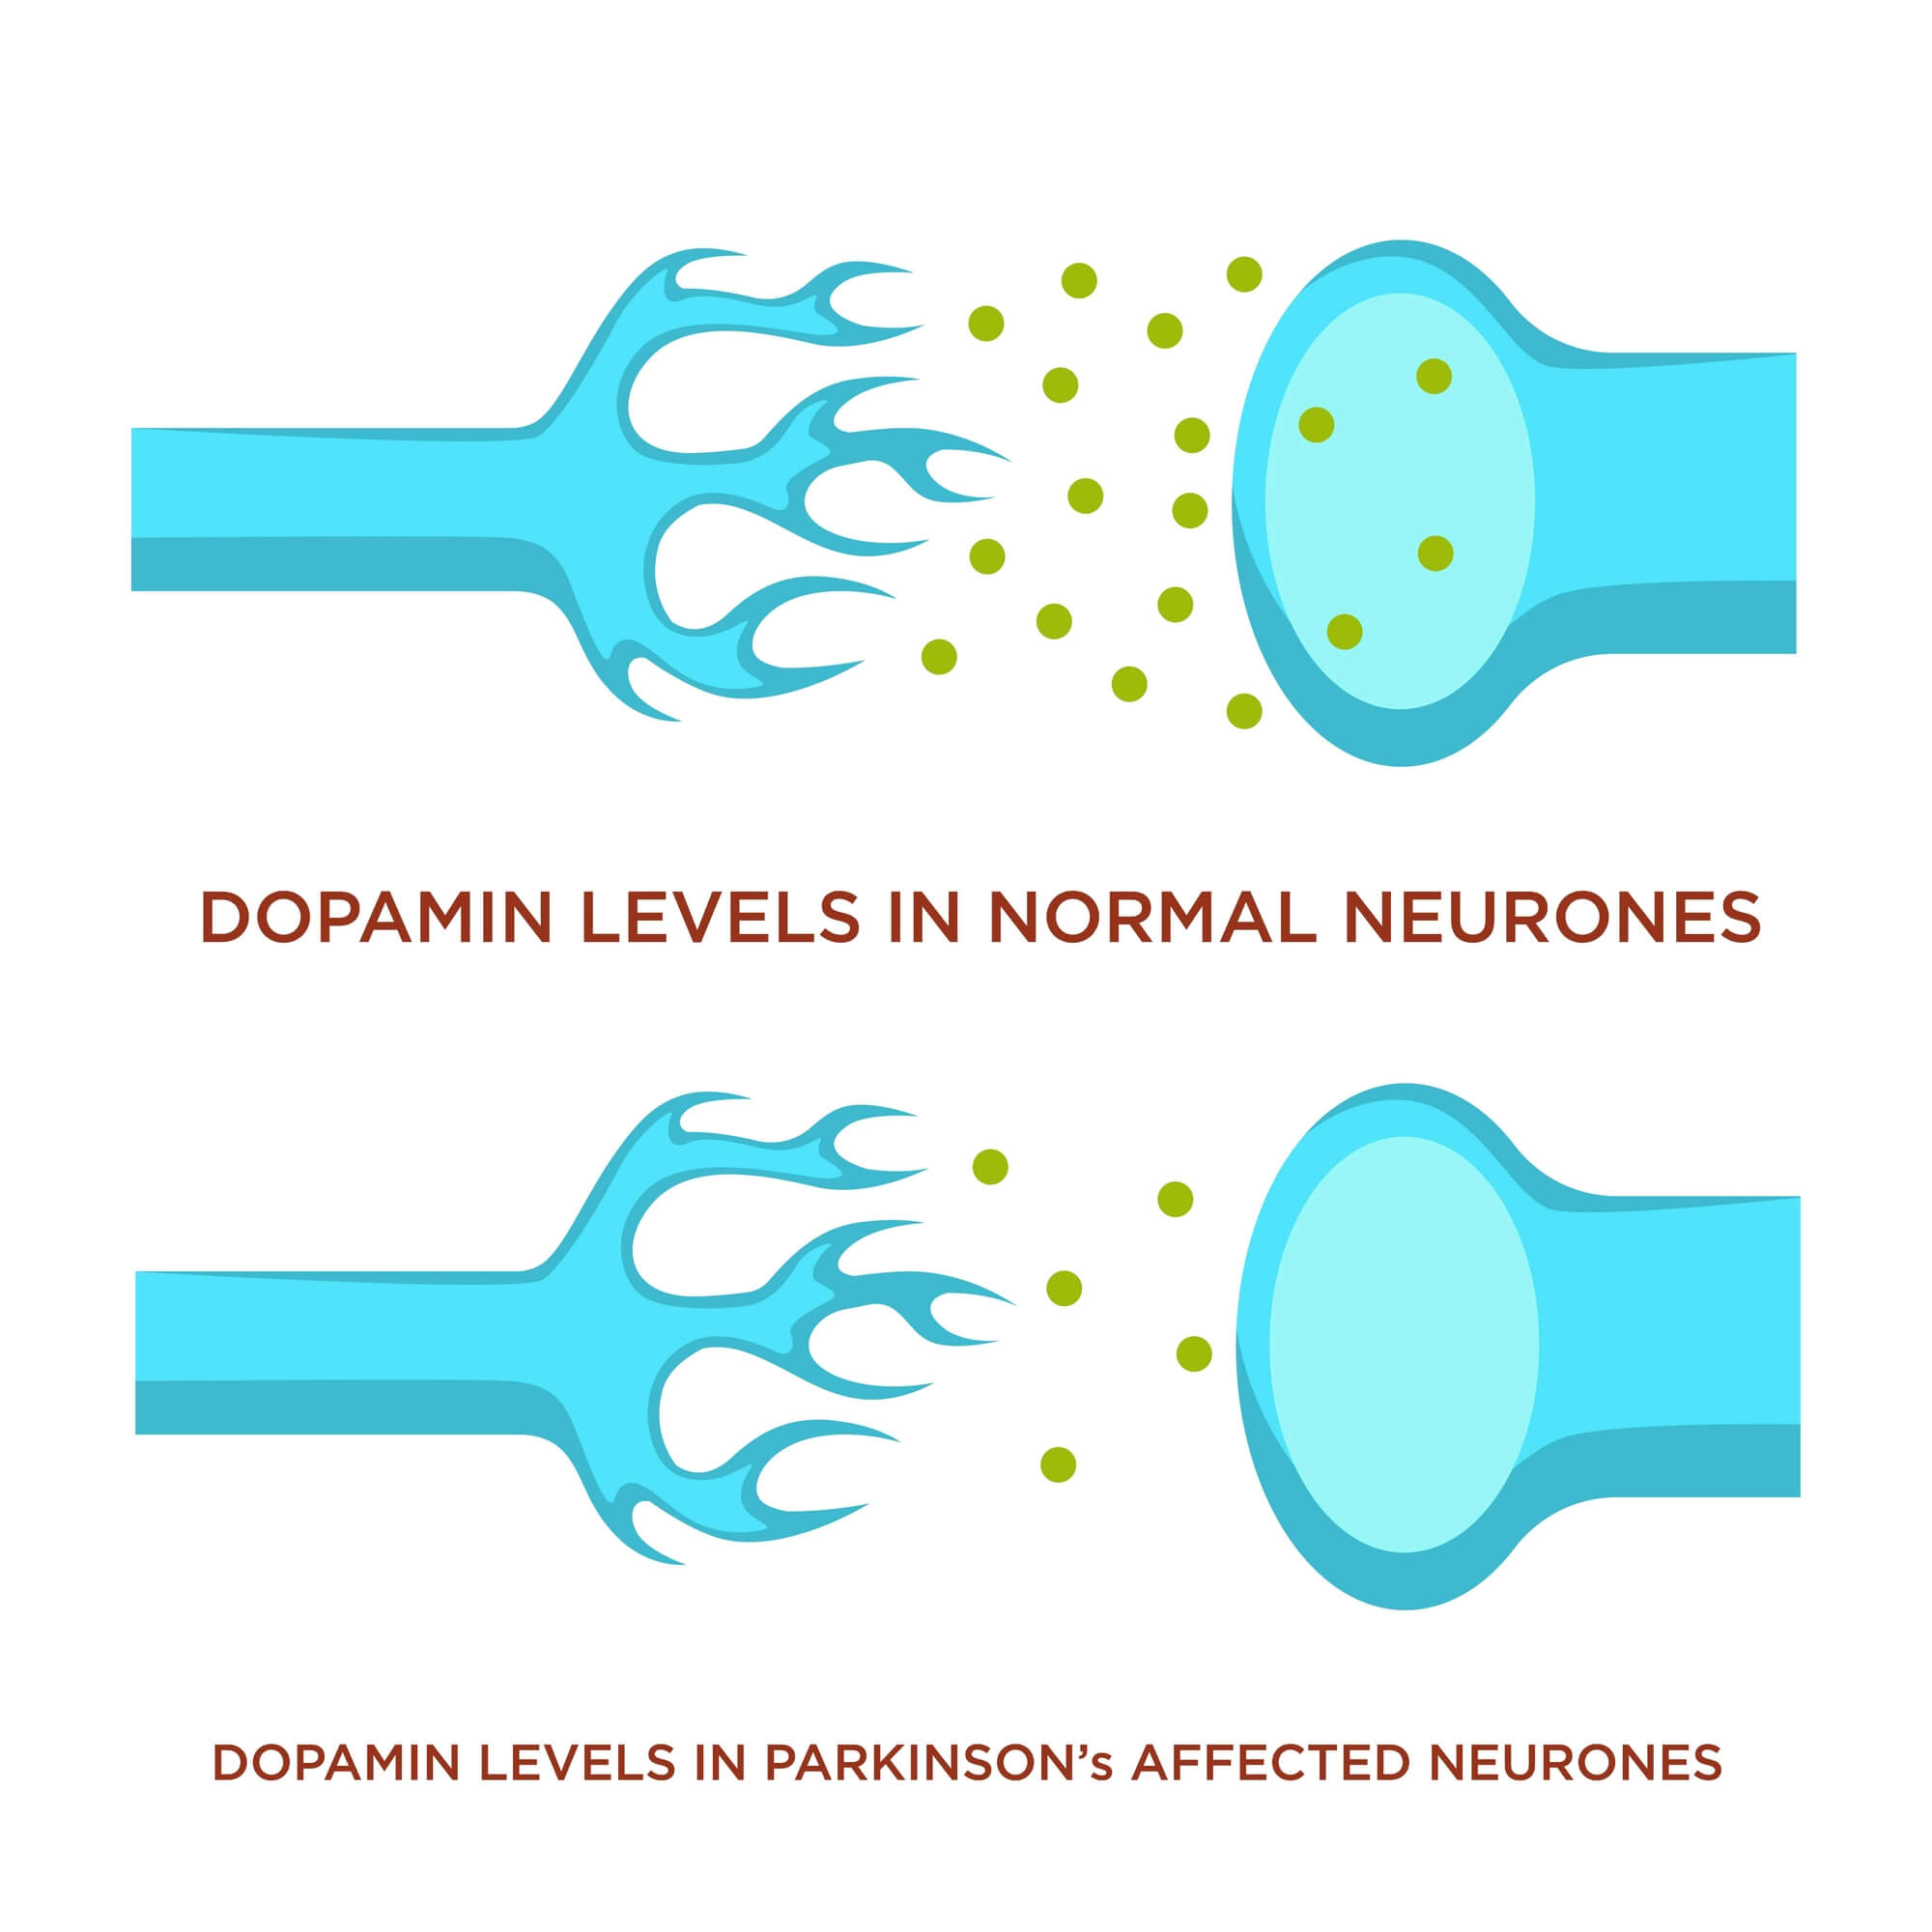 תאי עצב של אדם בריא (למעלה) בהשוואה לתא דומה של חולה פרקינסון. המחסור בדופאמין גורם להפרעות נוירולוגיות.  <a href="https://depositphotos.com. ">המחשה: depositphotos.com</a>